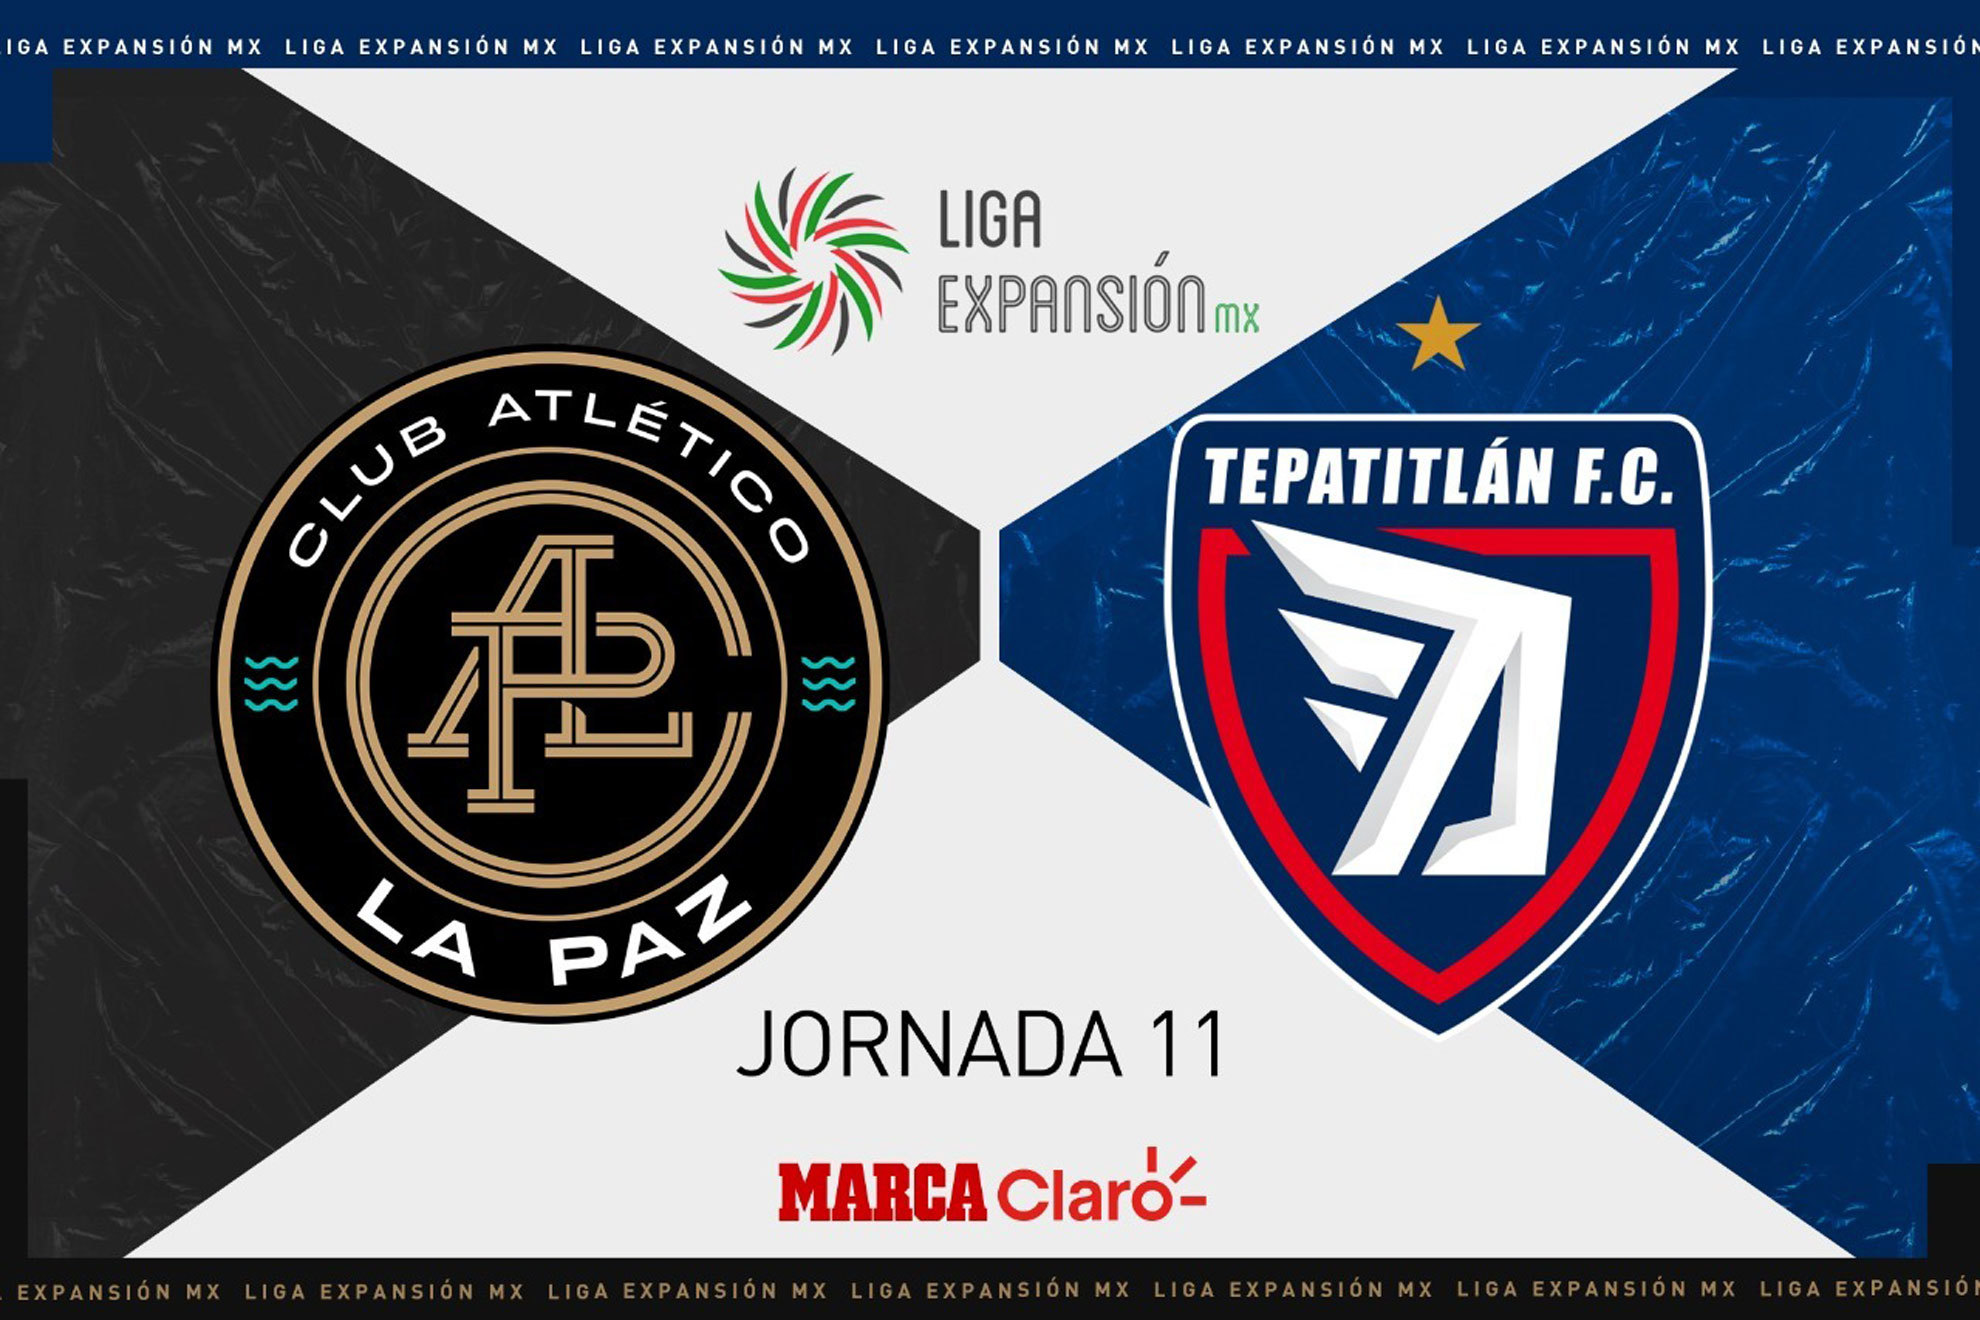 CA La Paz vs Tepatitlán, en vivo el streaming online del partido de la jornada 11 del Apertura 2022 de la Liga Expansión MX